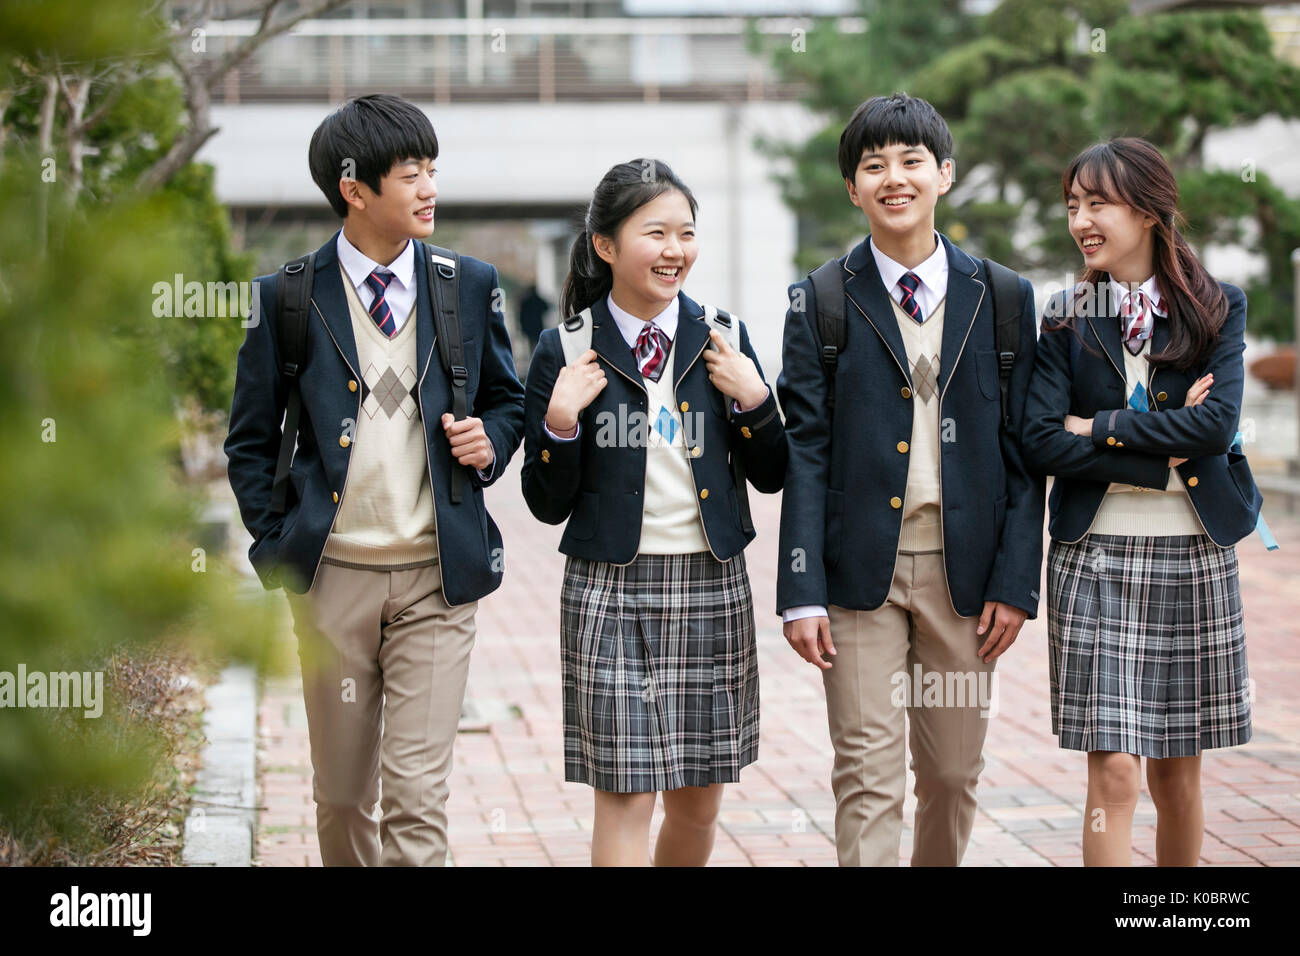 Quatre étudiants de l'école smiling walking Banque D'Images